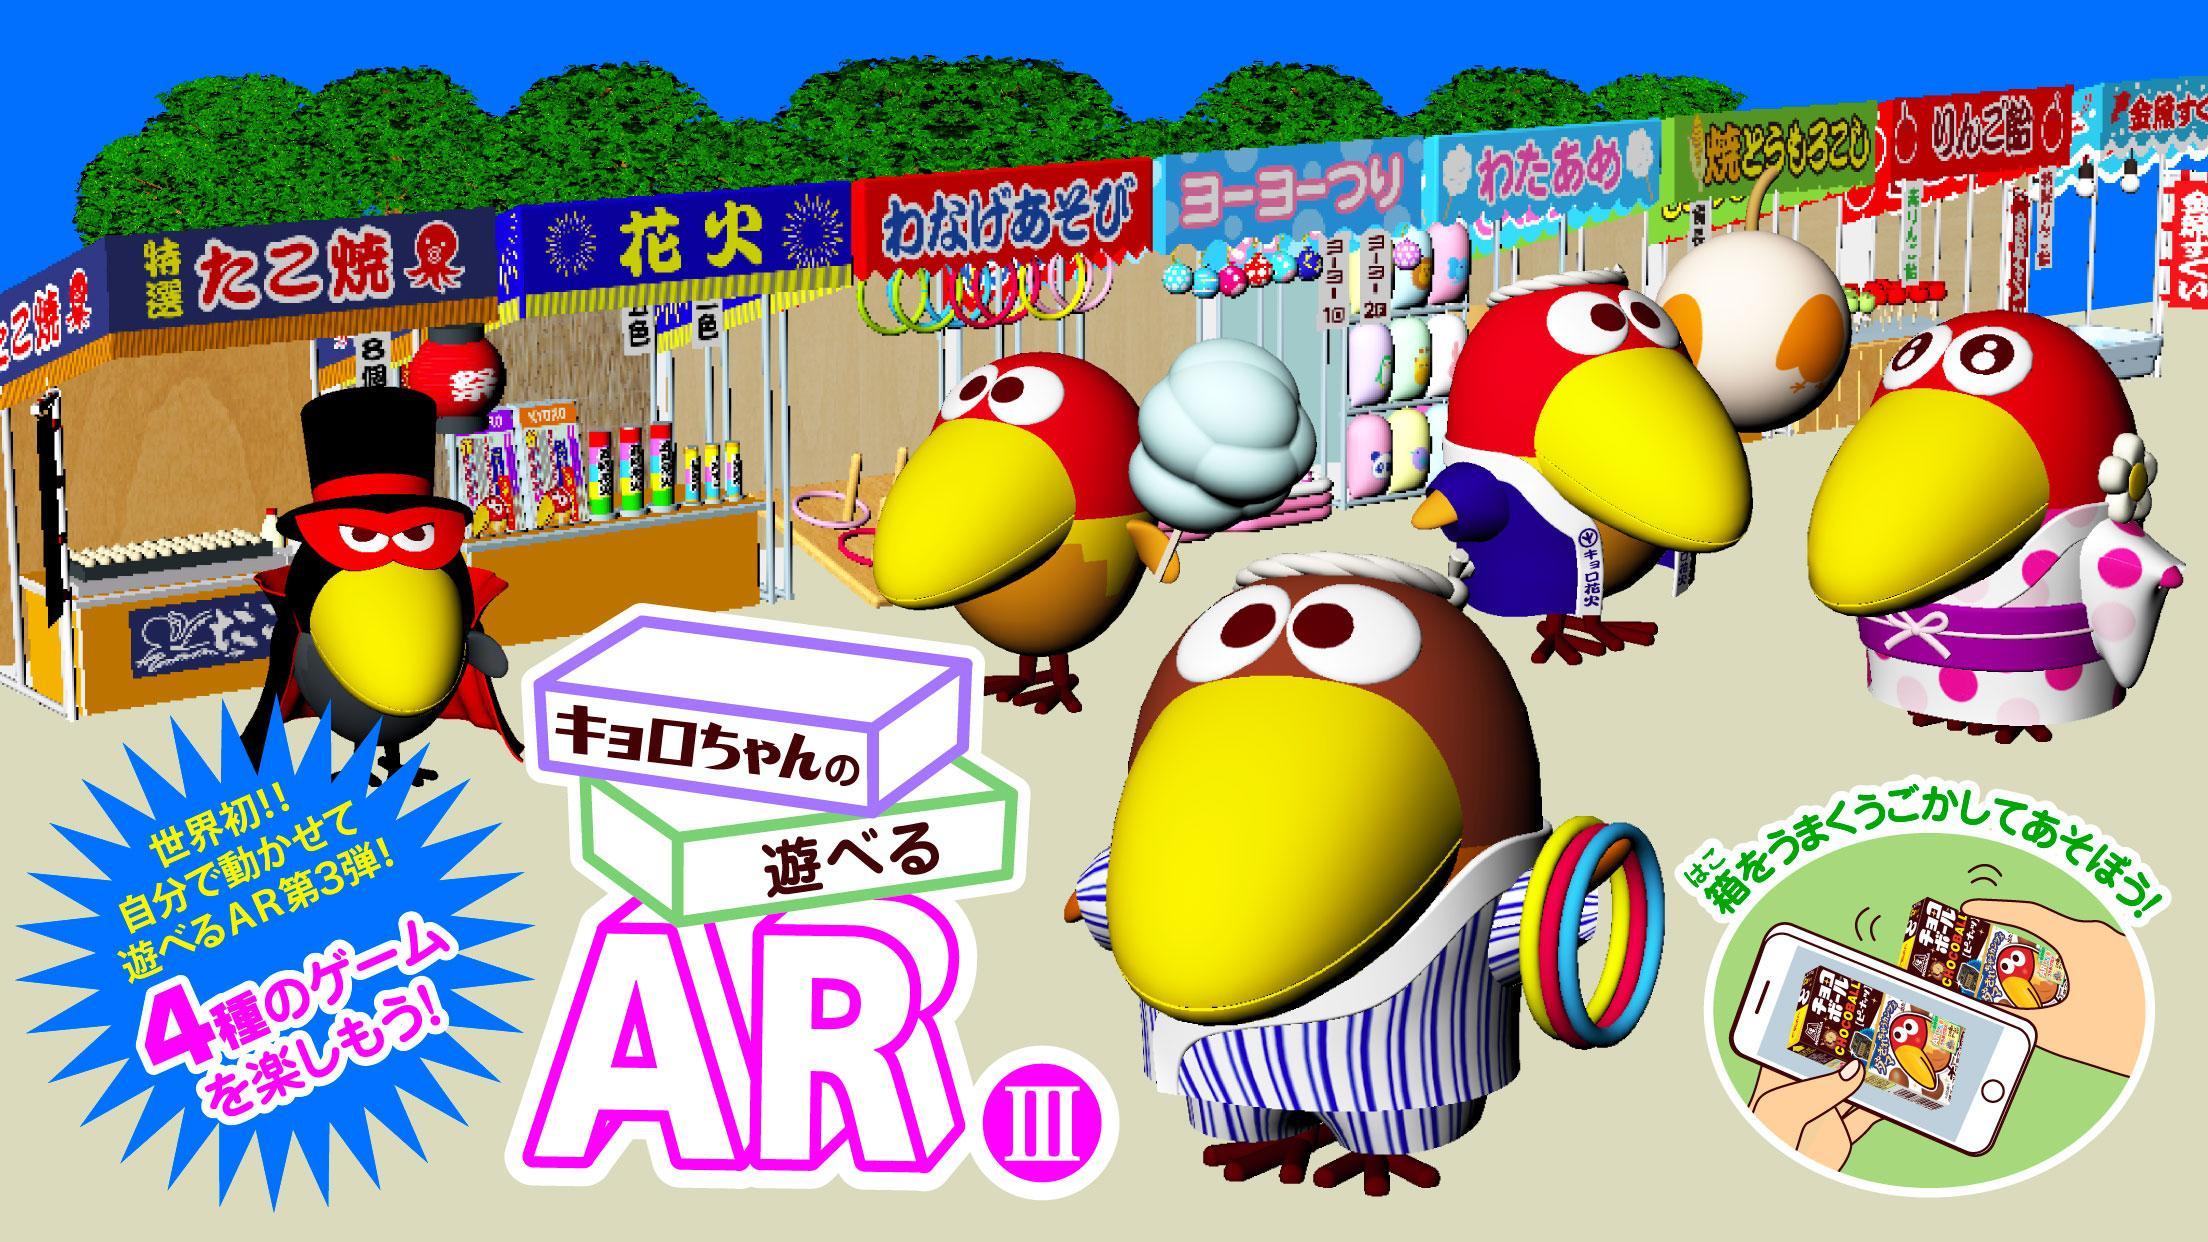 Screenshot 1 of Le jeu AR III A jouable de Kyoro-chan joué avec une boîte de boules de chocolat 1.0